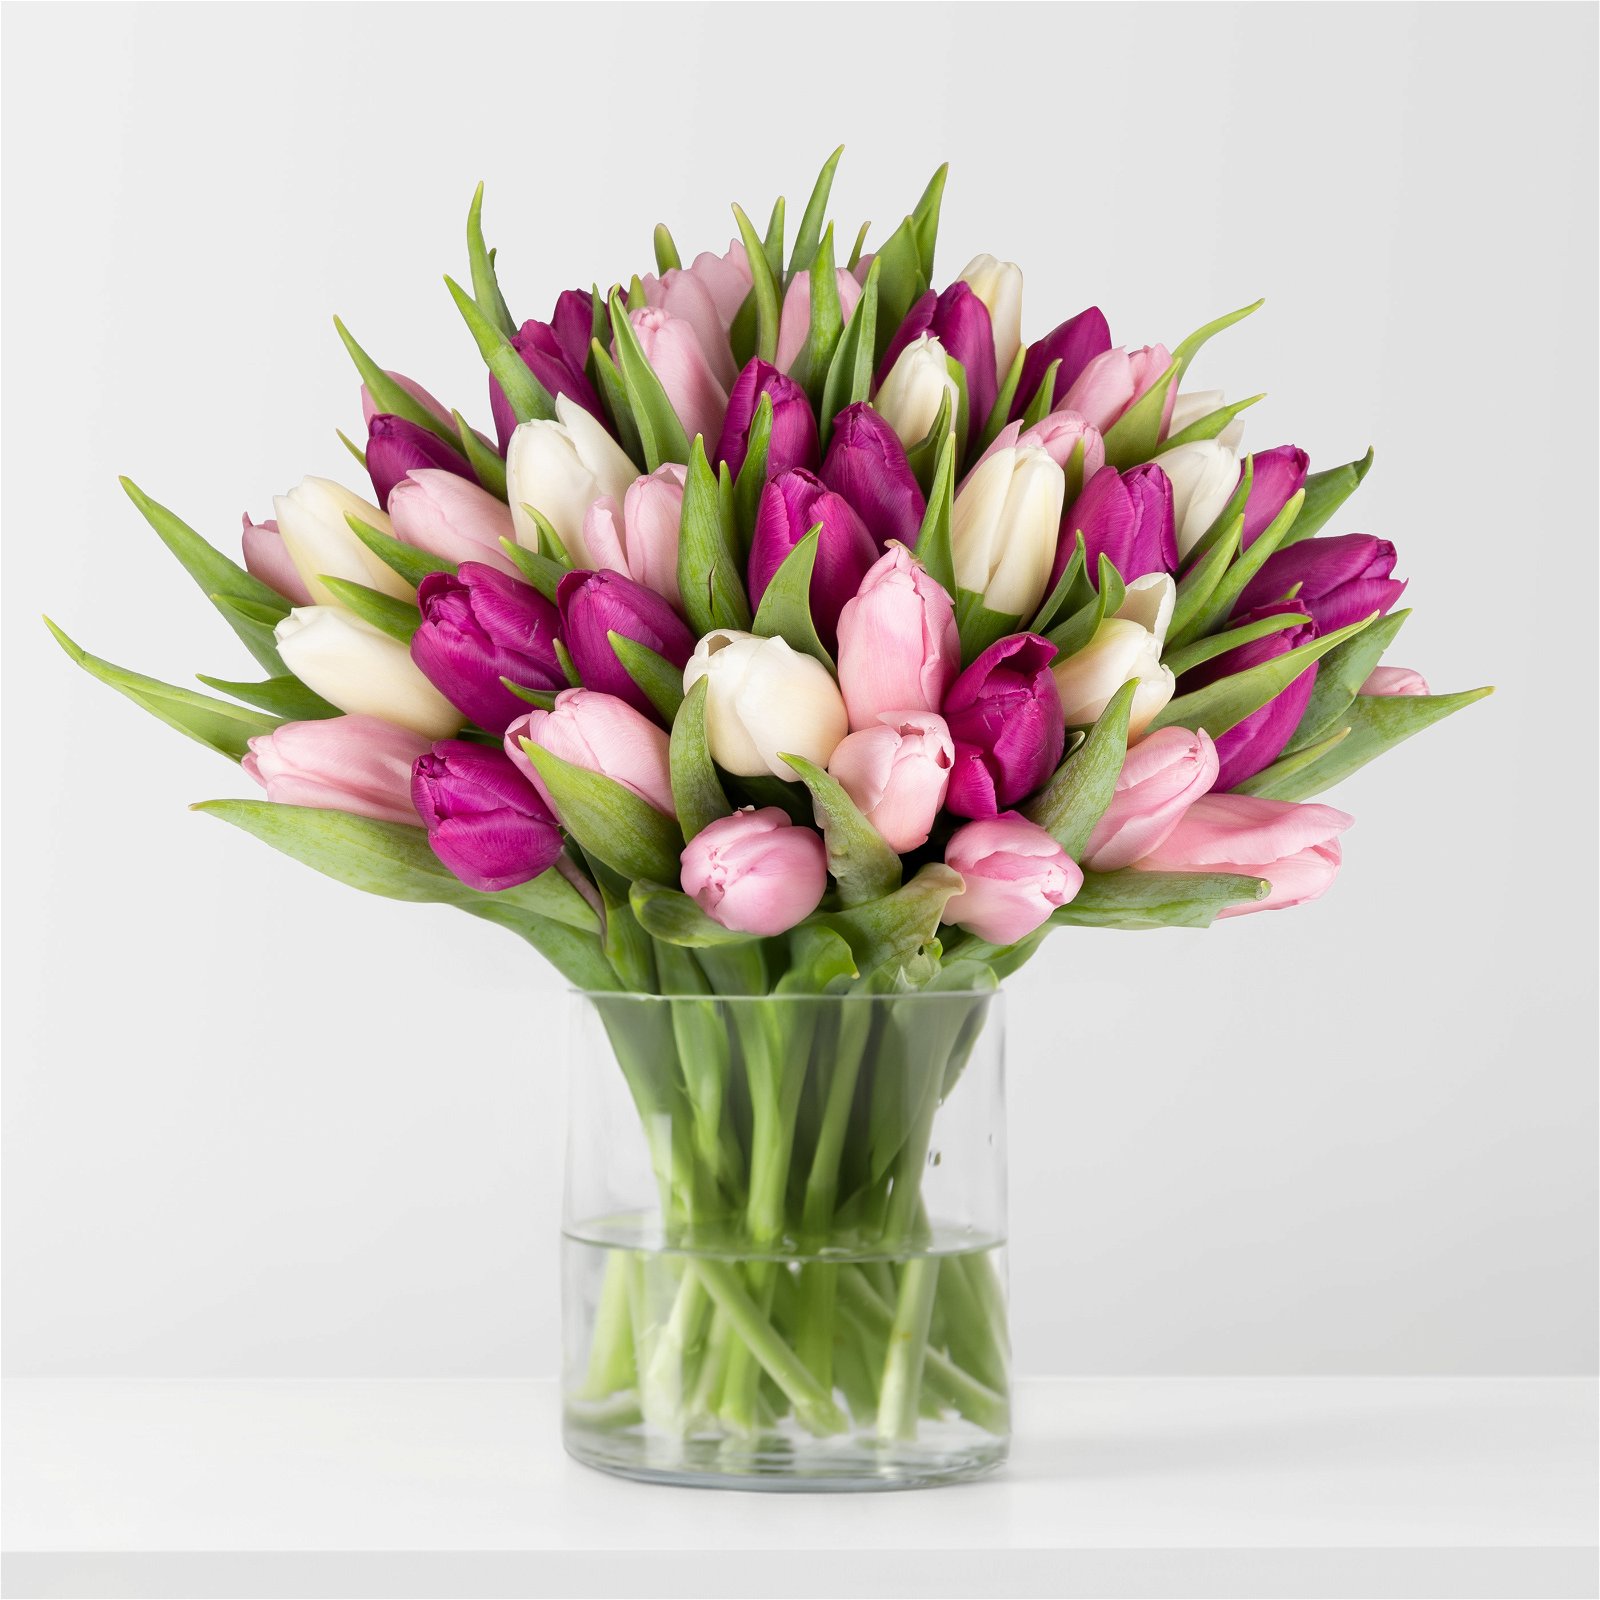 Blumenbund mit Tulpen, 50er-Bund, weiß - lila - hellrosa, inkl. gratis Grußkarte